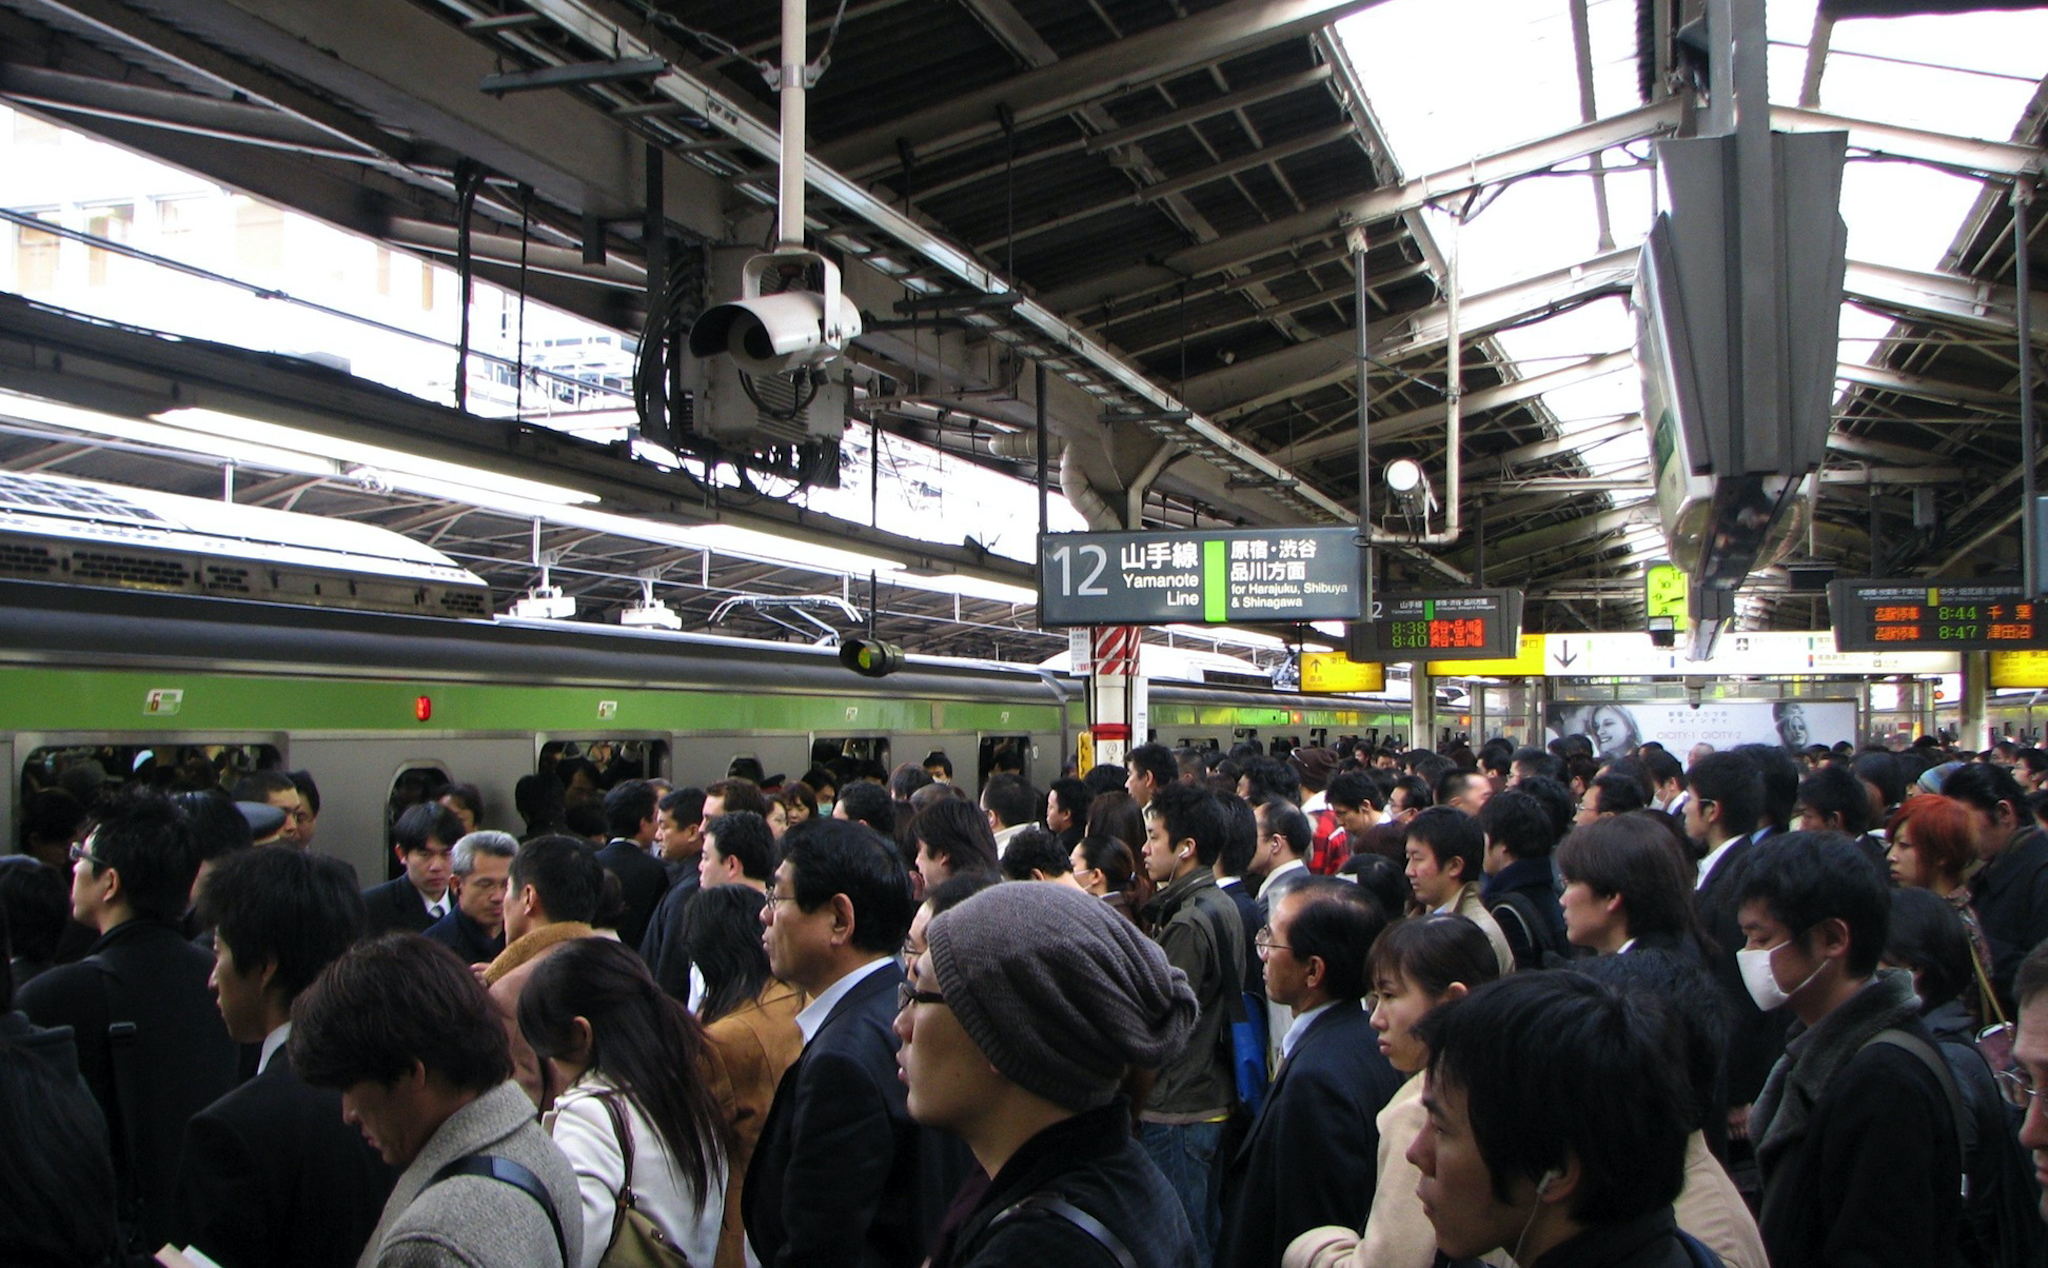 Tai nghe không dây bị rớt xuống đường sắt quá nhiều tại Nhật